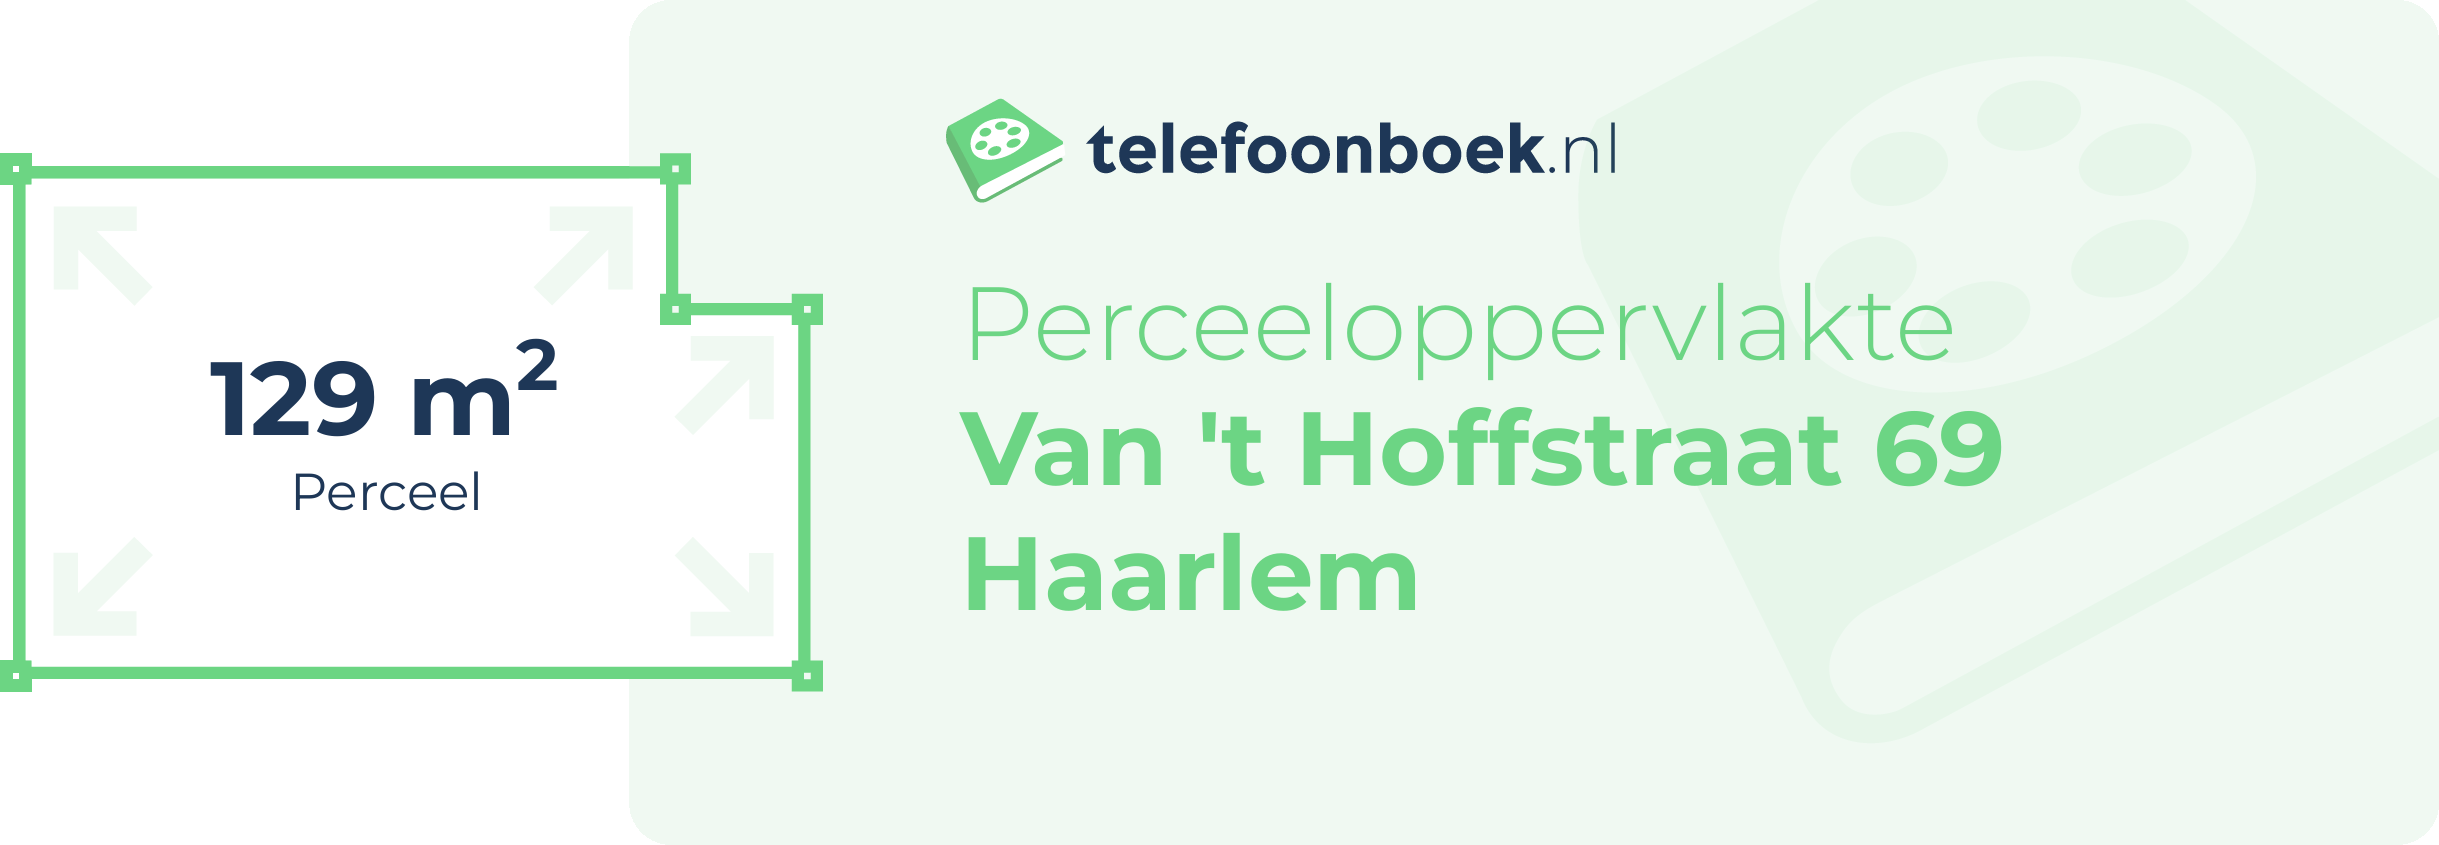 Perceeloppervlakte Van 't Hoffstraat 69 Haarlem